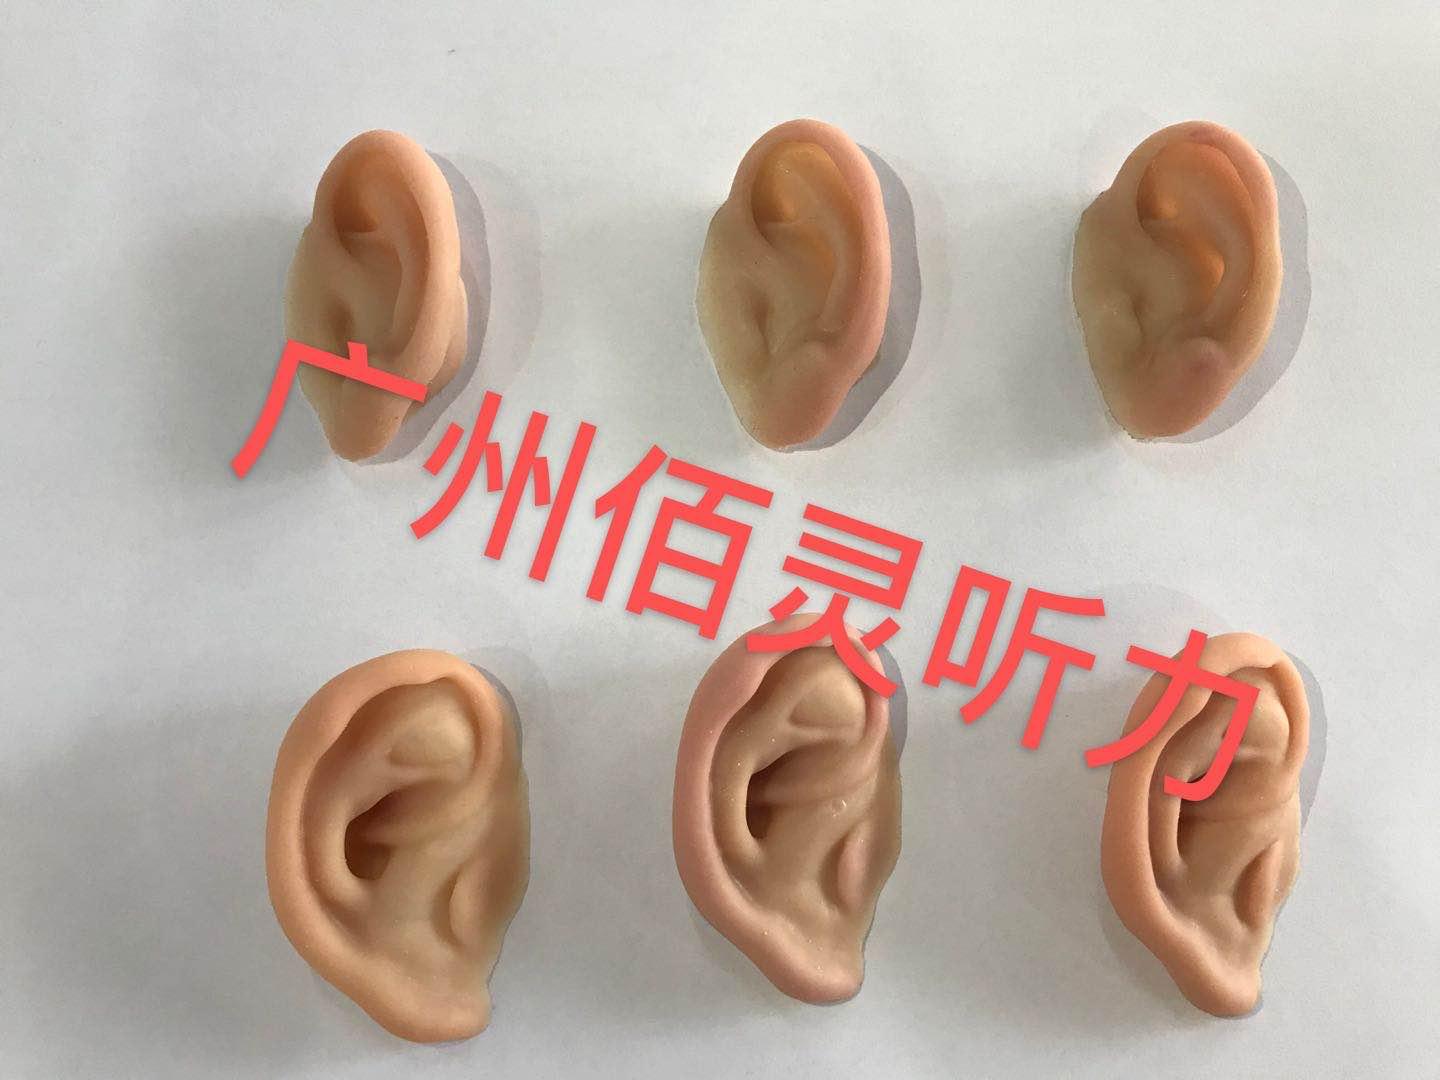 八大处于晓波医生耳畸形修复/耳再造案例图集(持续更新。。。)_小耳畸形_小耳畸形治疗方式 - 好大夫在线